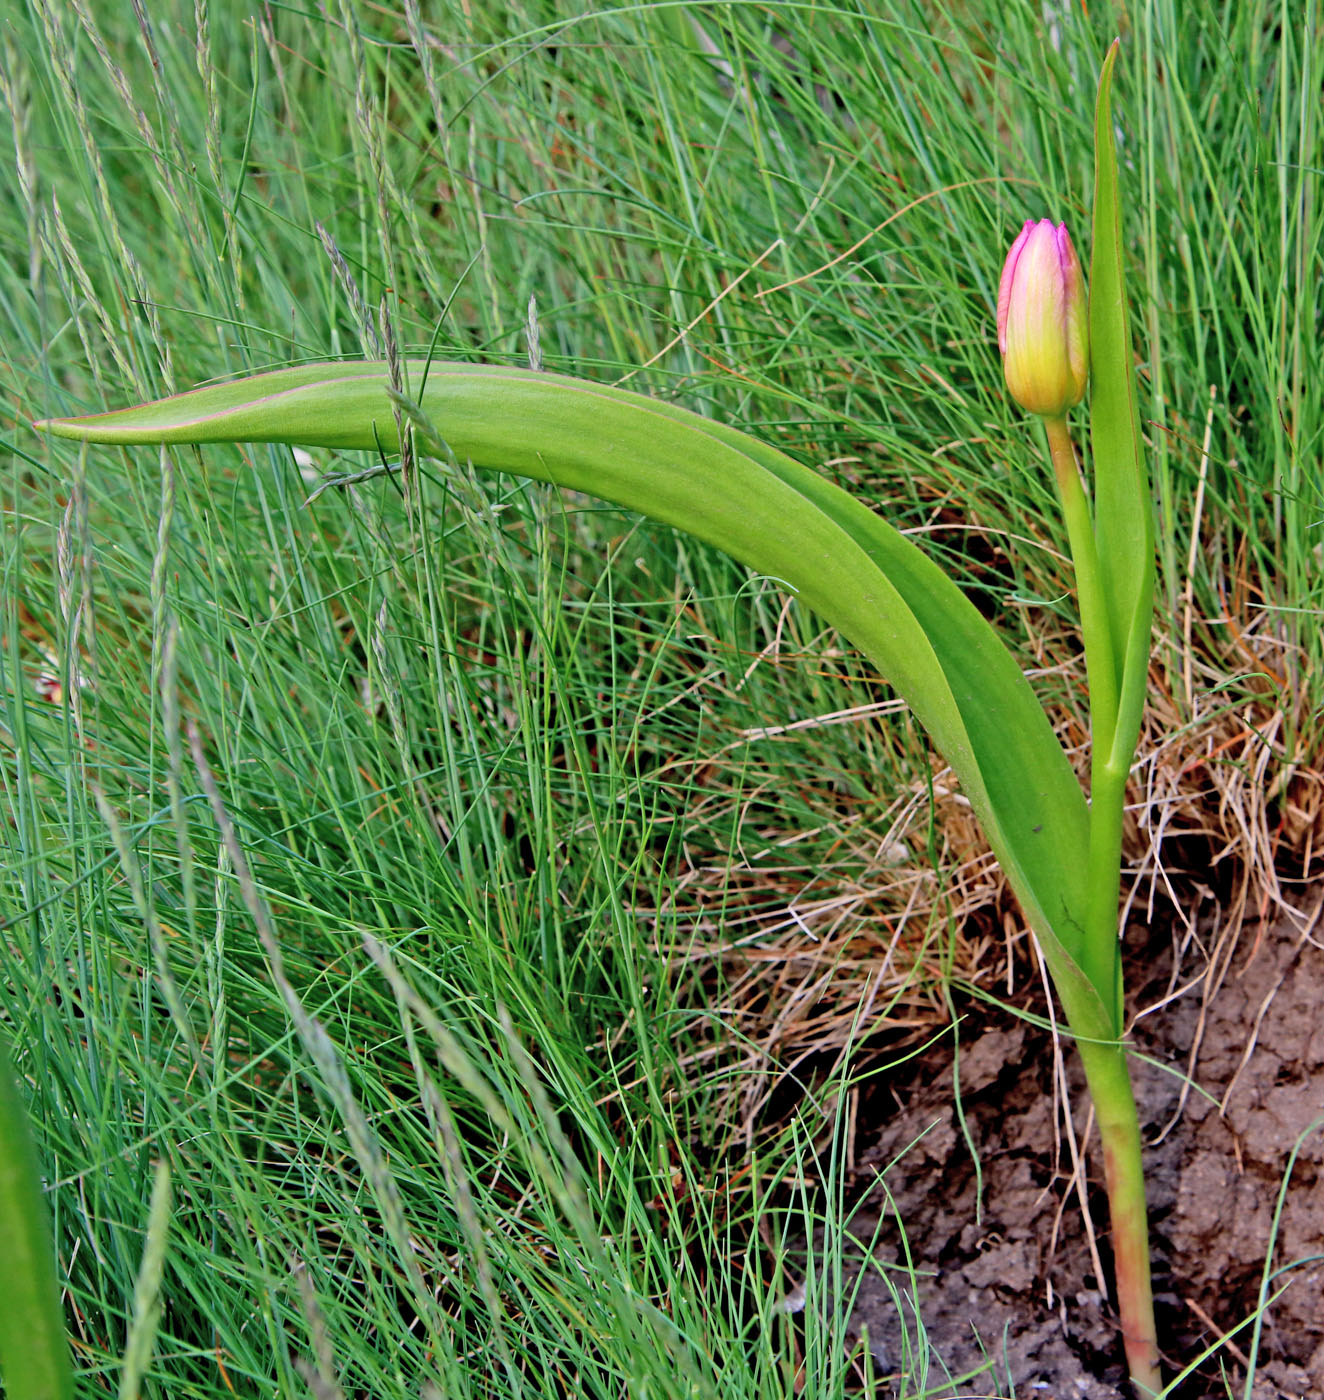 Image of Tulipa saxatilis specimen.